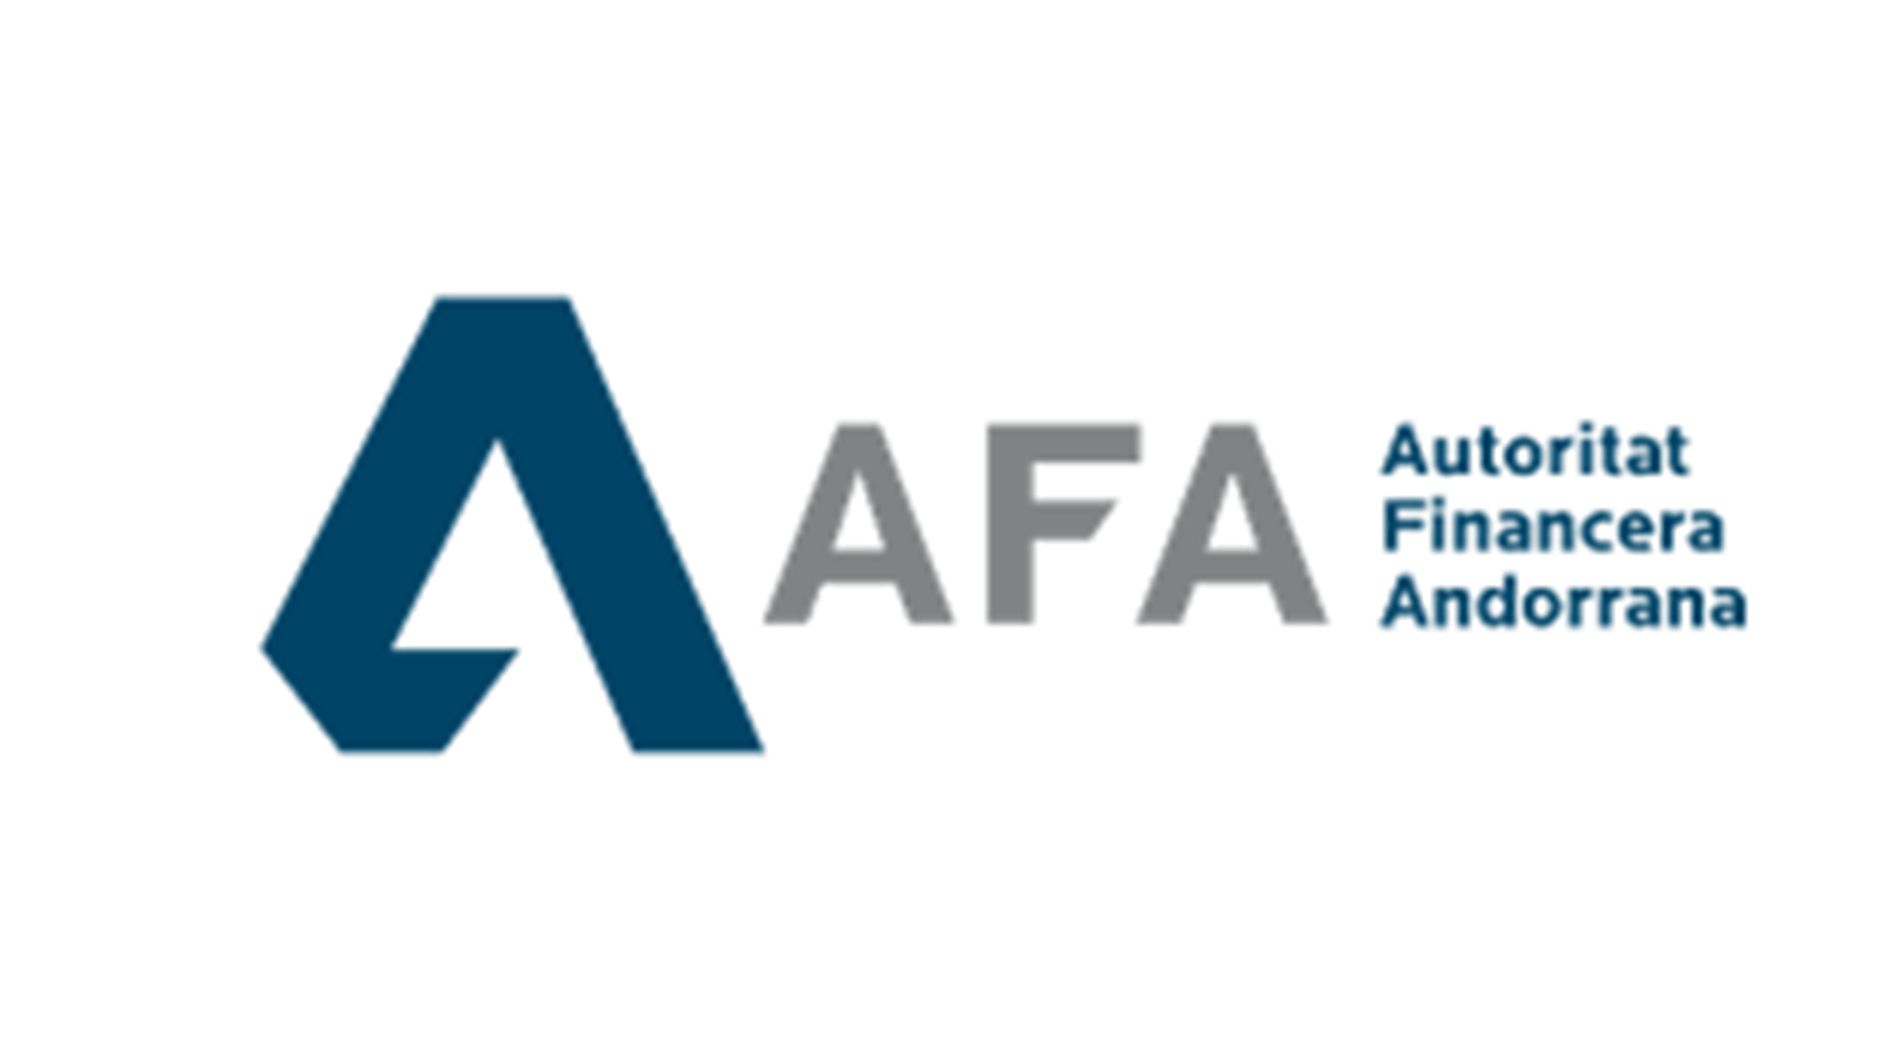 L'AFA estableix el procediment de comunicació de potencials infraccions La informació sobre infraccions potencials o reals per part de qualsevol persona que en tingui coneixement pot ser la clau per detectar i prevenir, reduir o eliminar riscos del sistema financer i assegurador i per a la protecció dels inversors i clients.